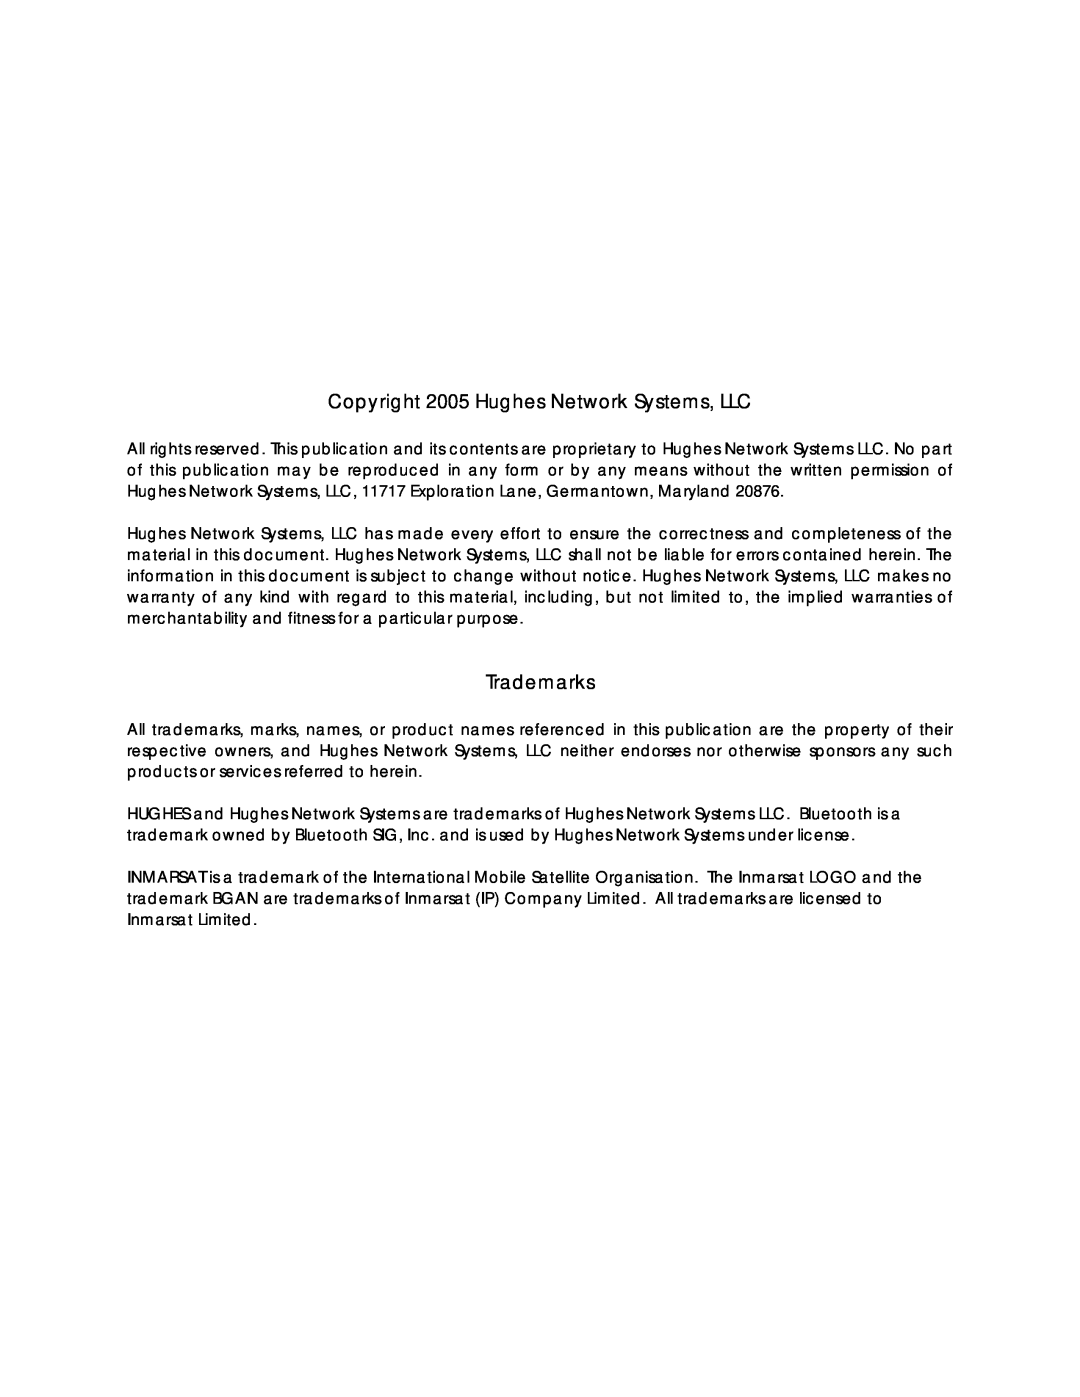 Hughes R-BGAN manual Copyright 2005 Hughes Network Systems, LLC, Trademarks 